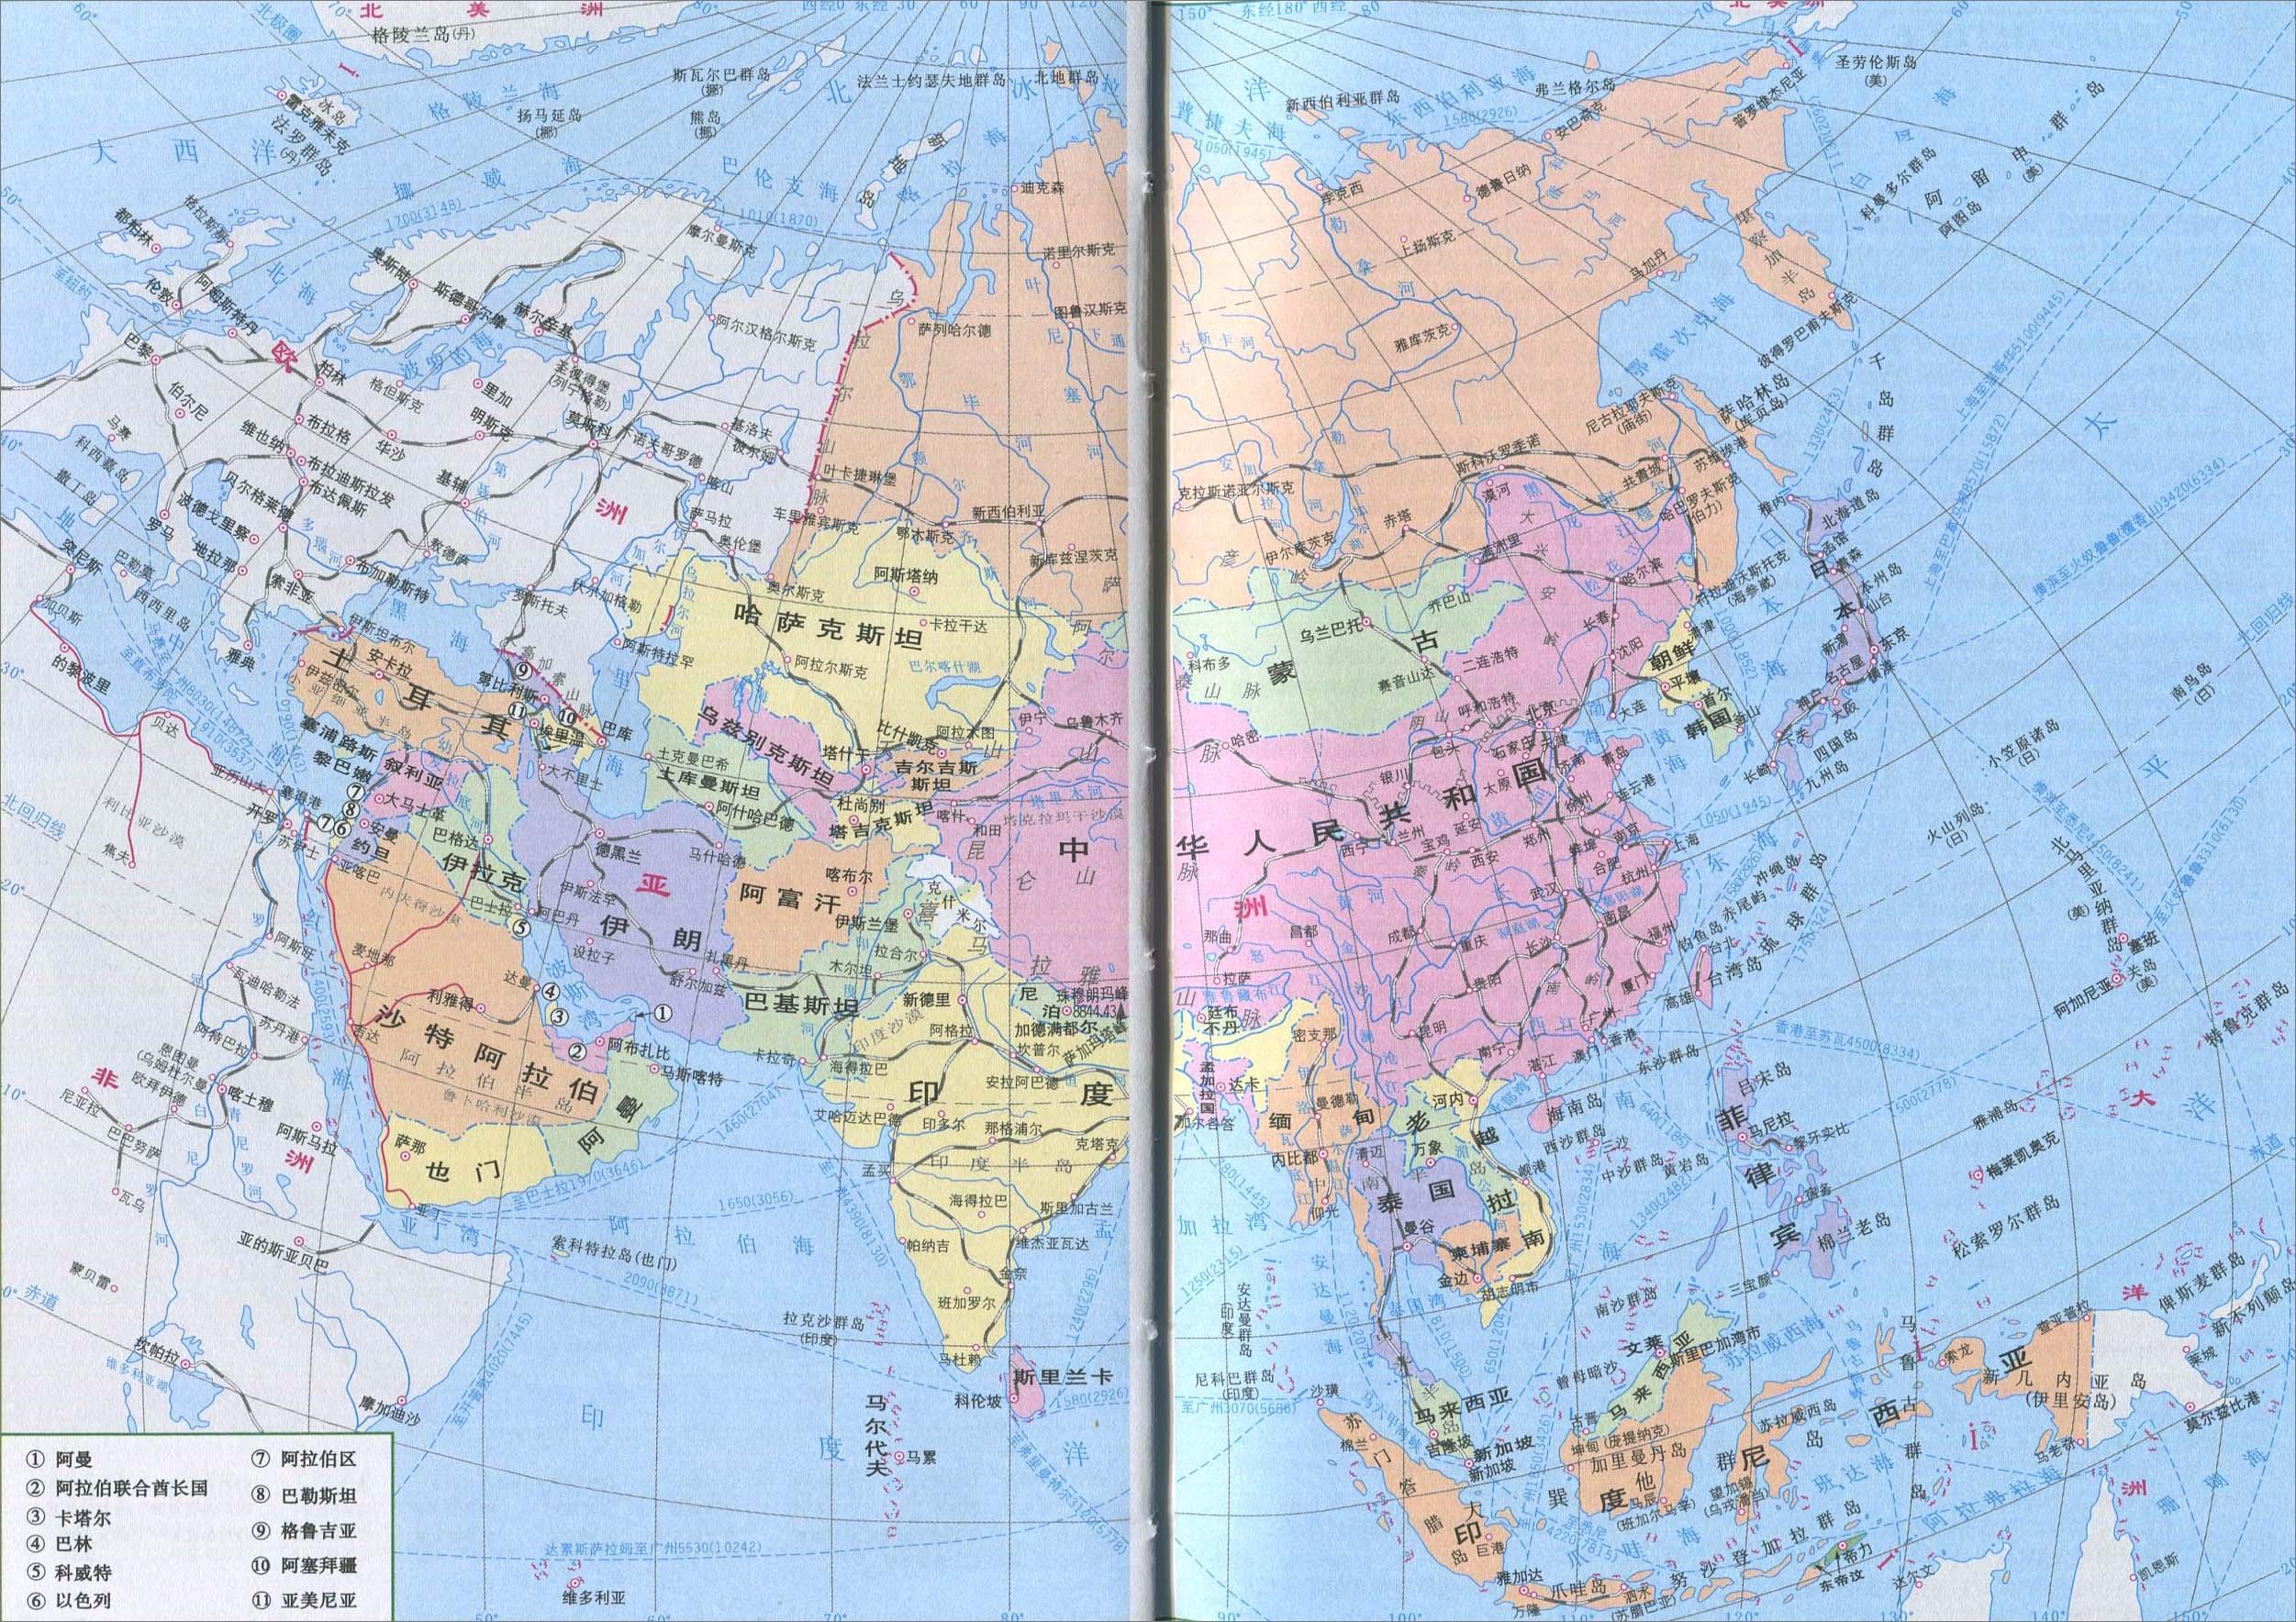 亚洲交通地图亚洲航运线路图亚洲地域辽阔,按照地理方位,把亚洲分为